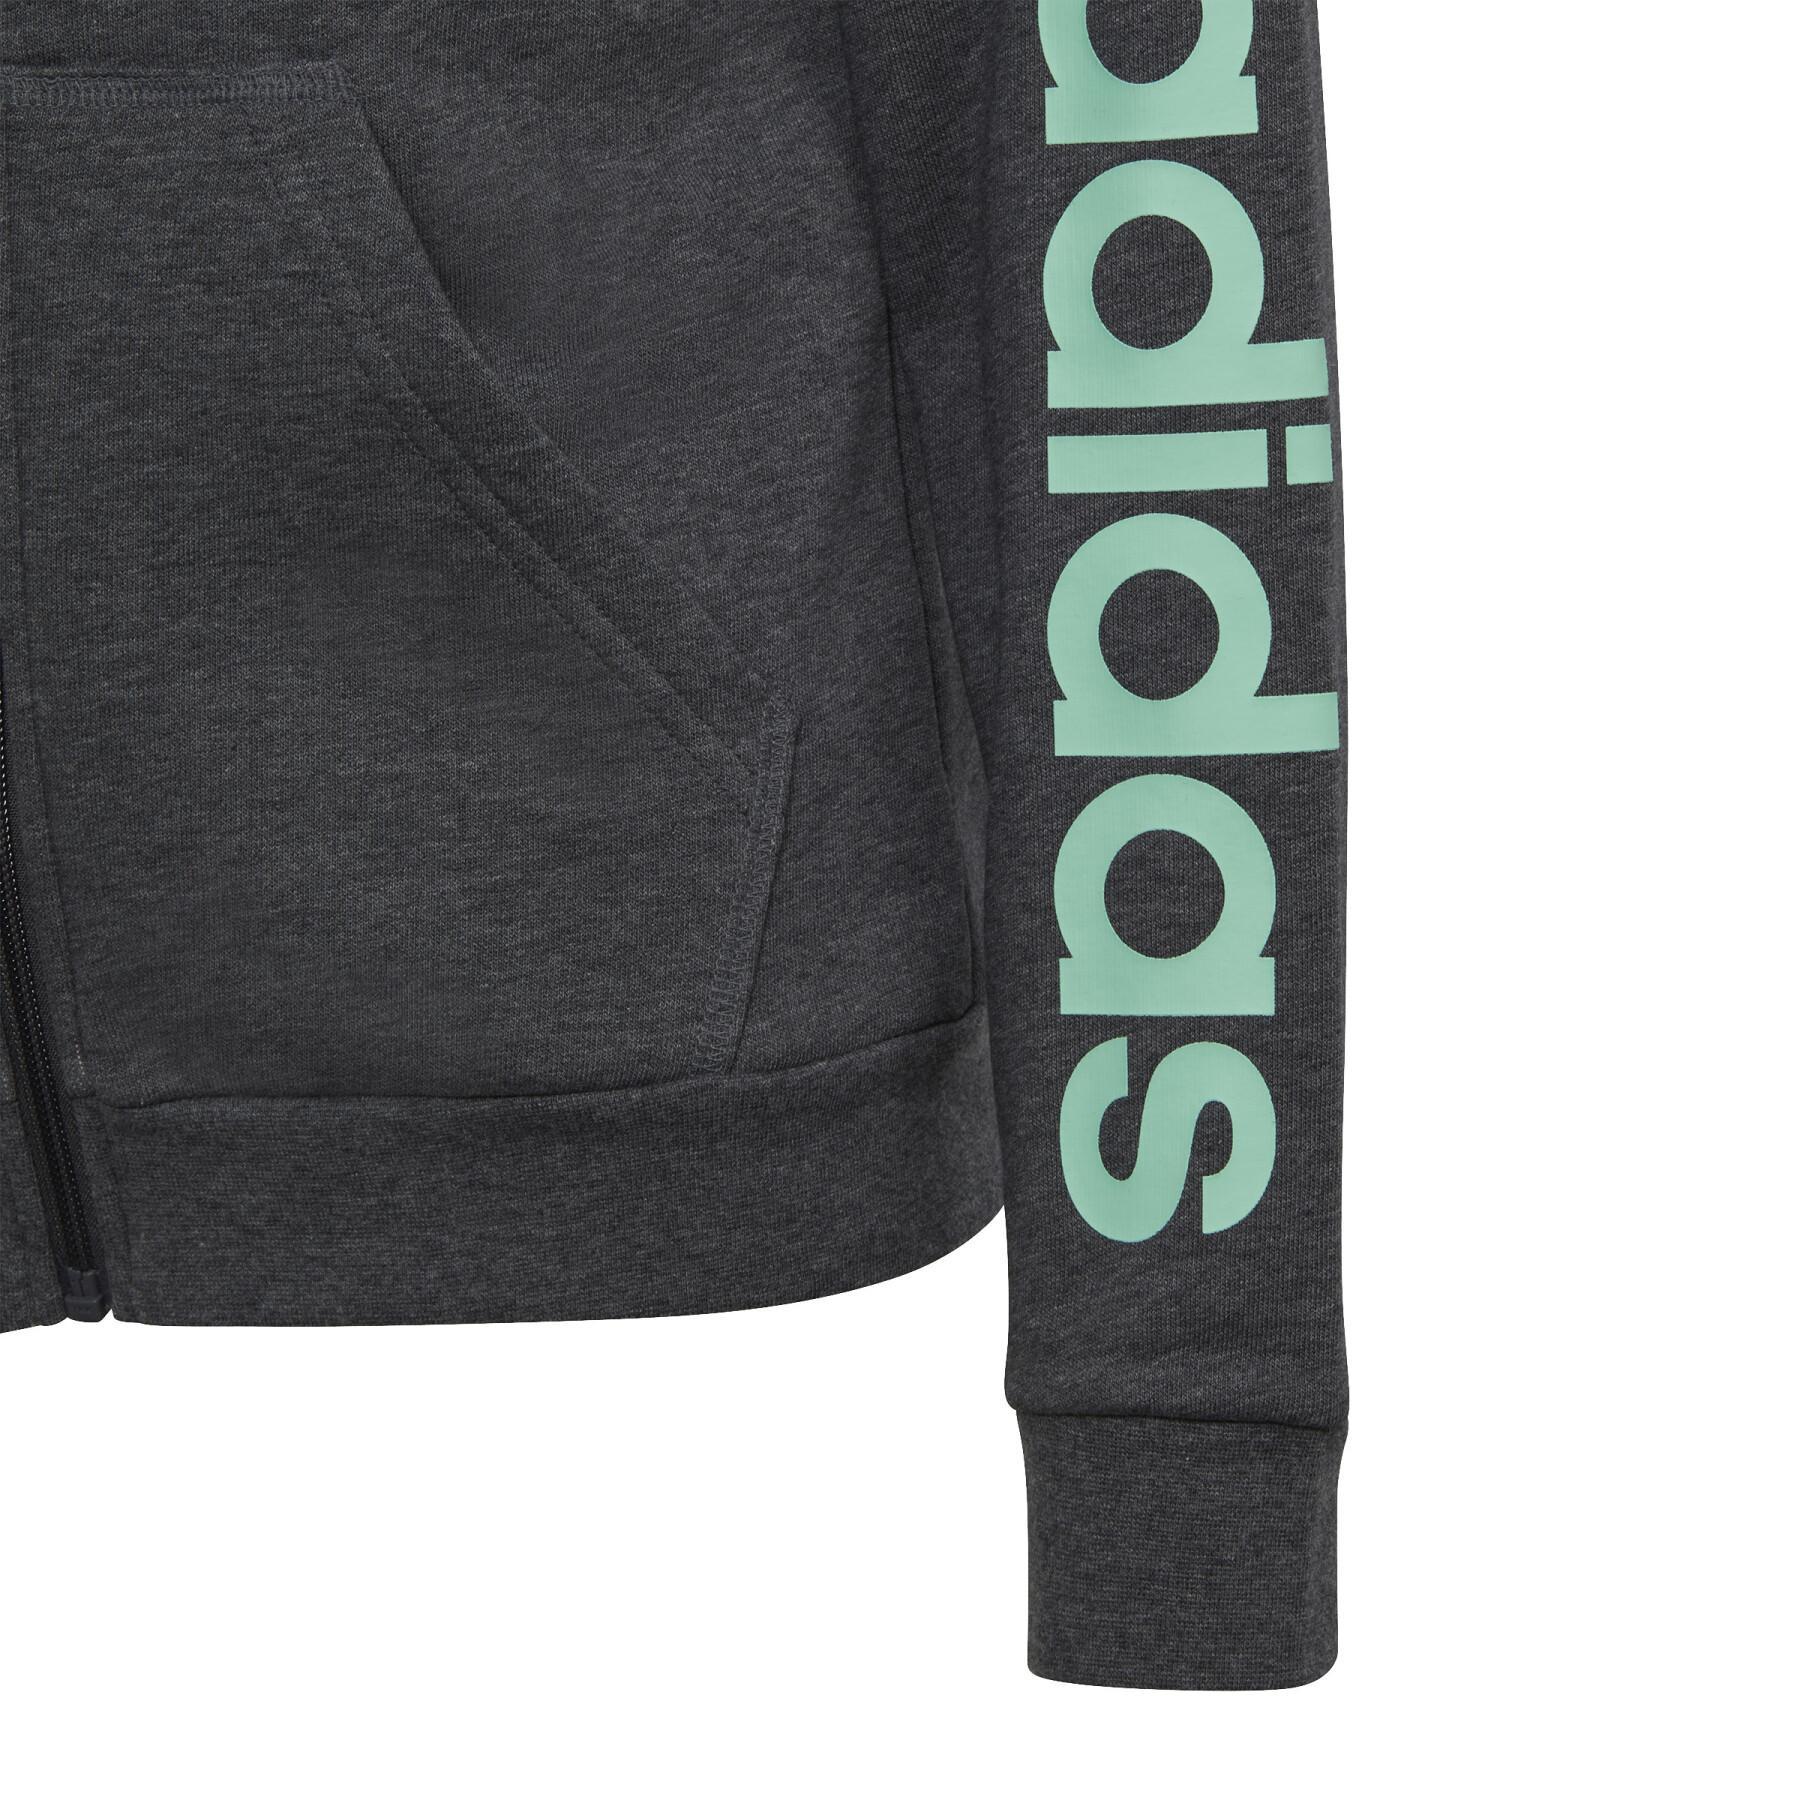 Sweatshirt meisjescapuchon met logo en rits adidas Essentials